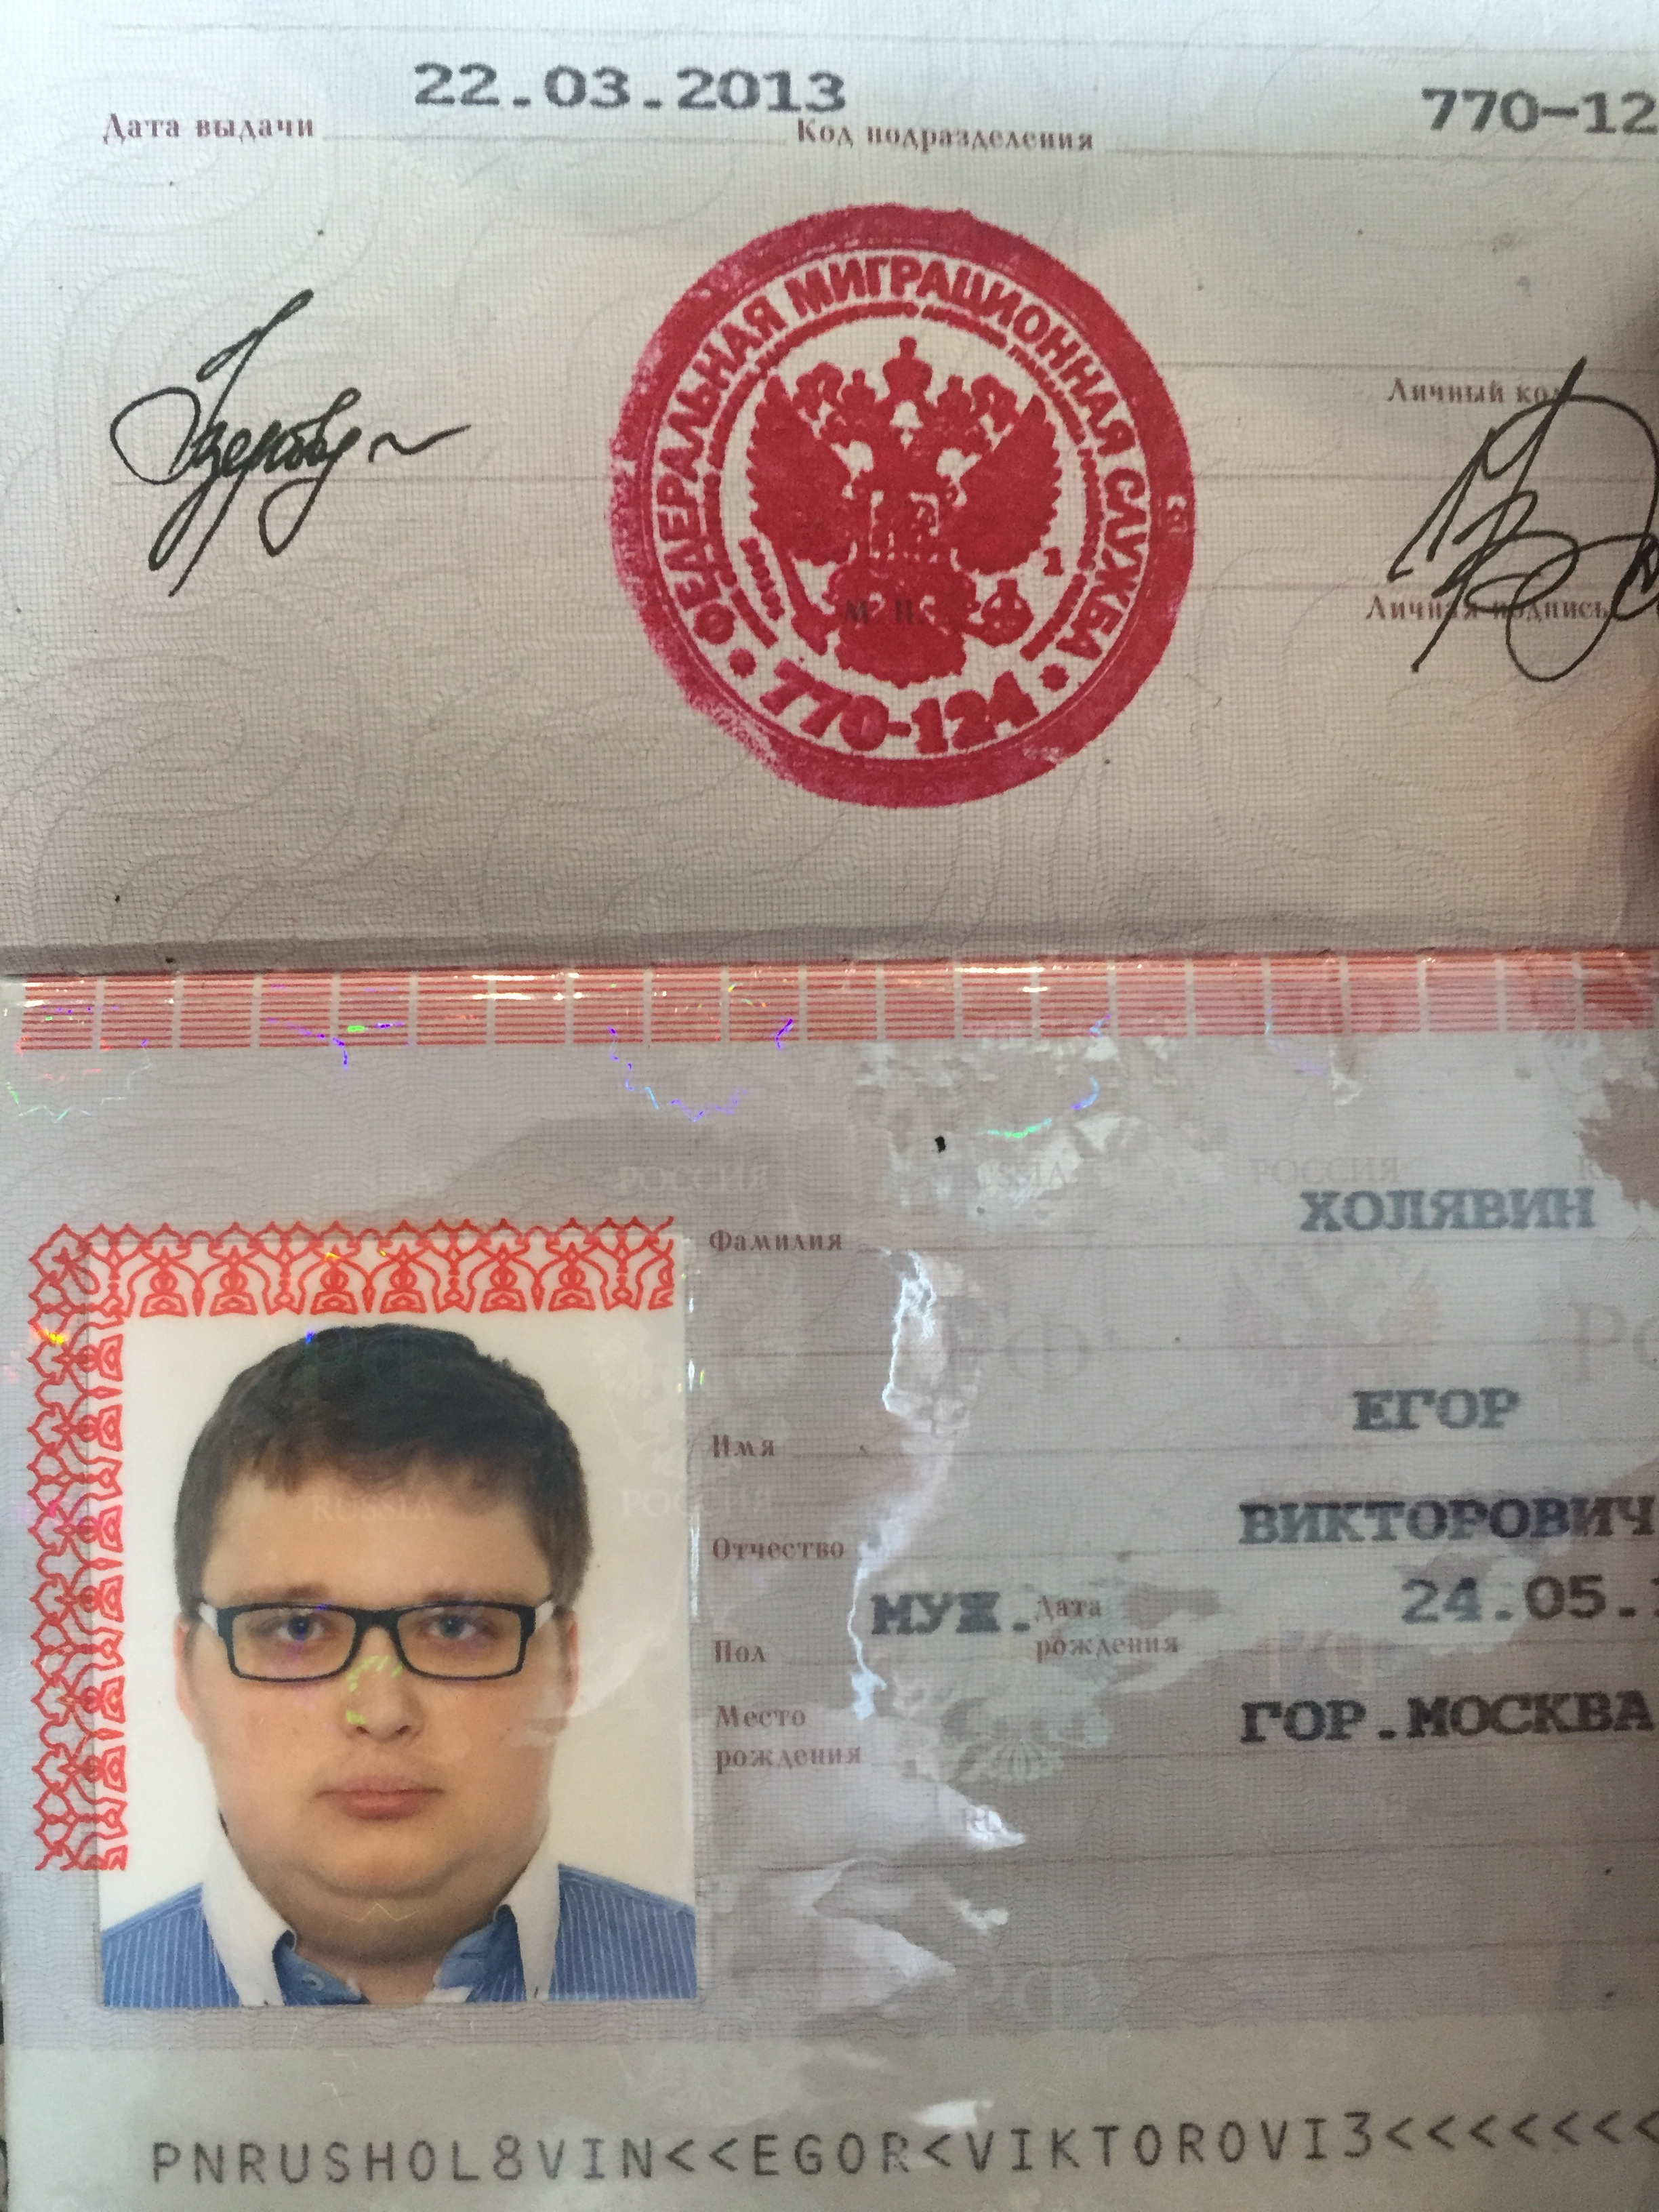 Фотография на паспорт